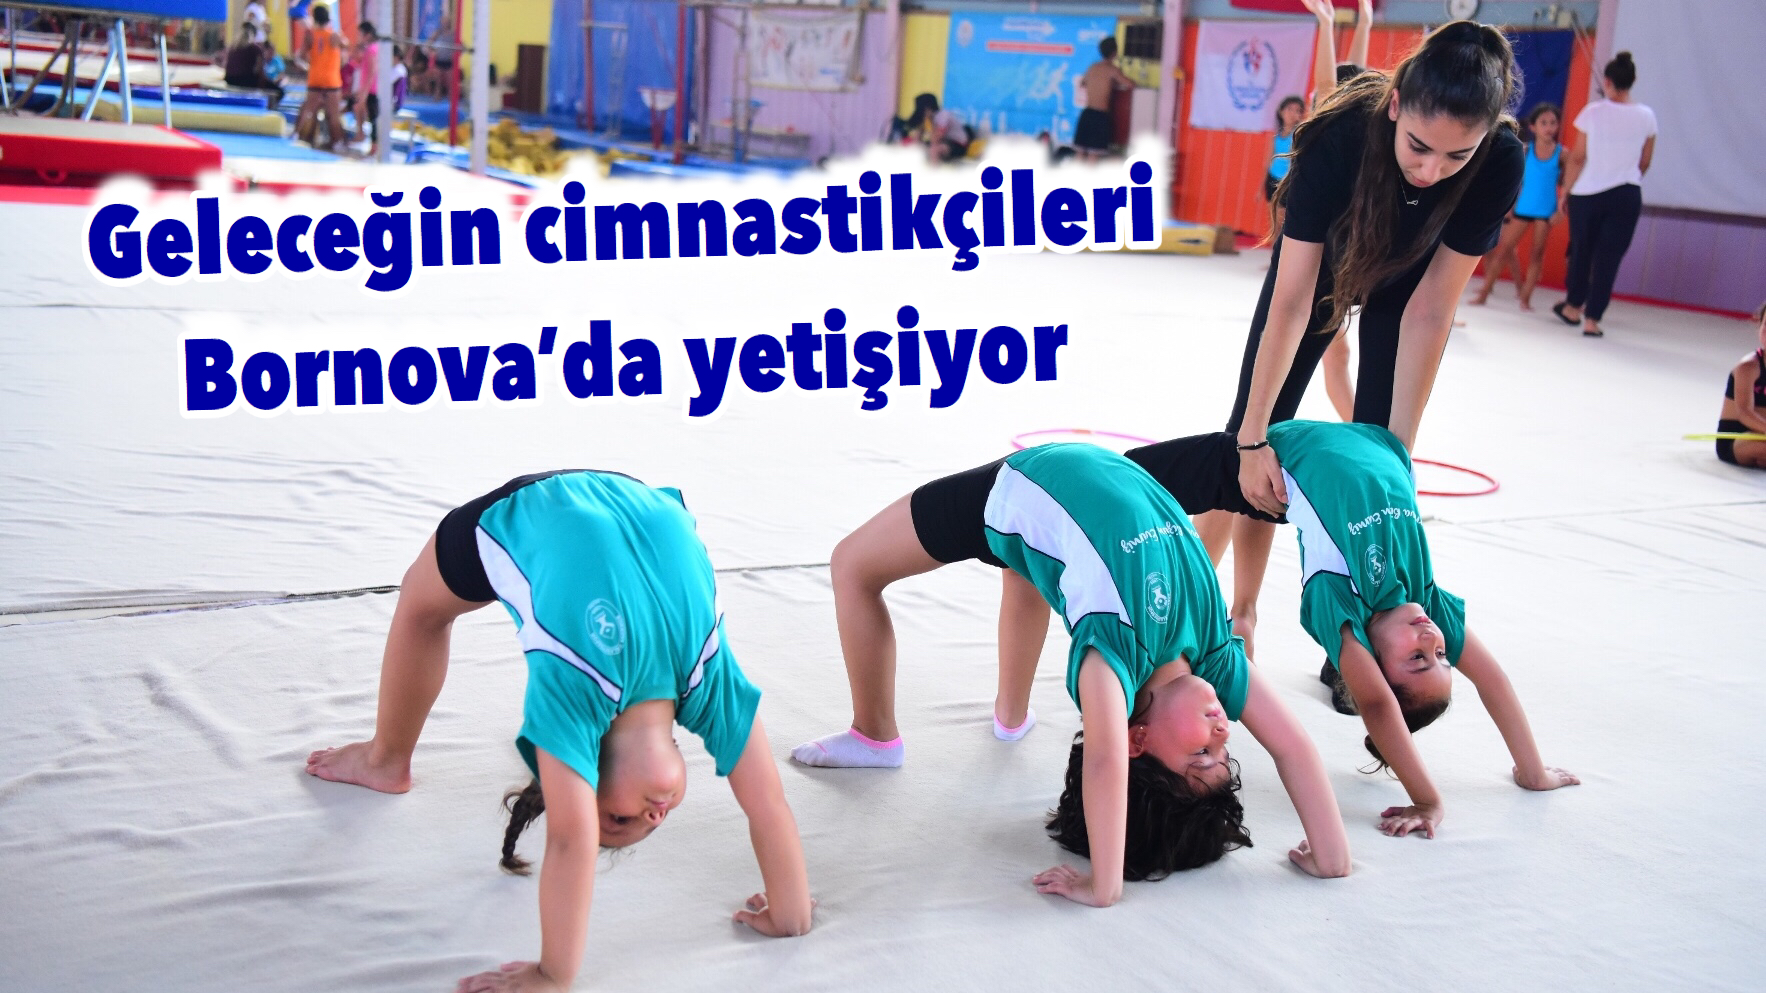 Geleceğin cimnastikçileri Bornova’da yetişiyor